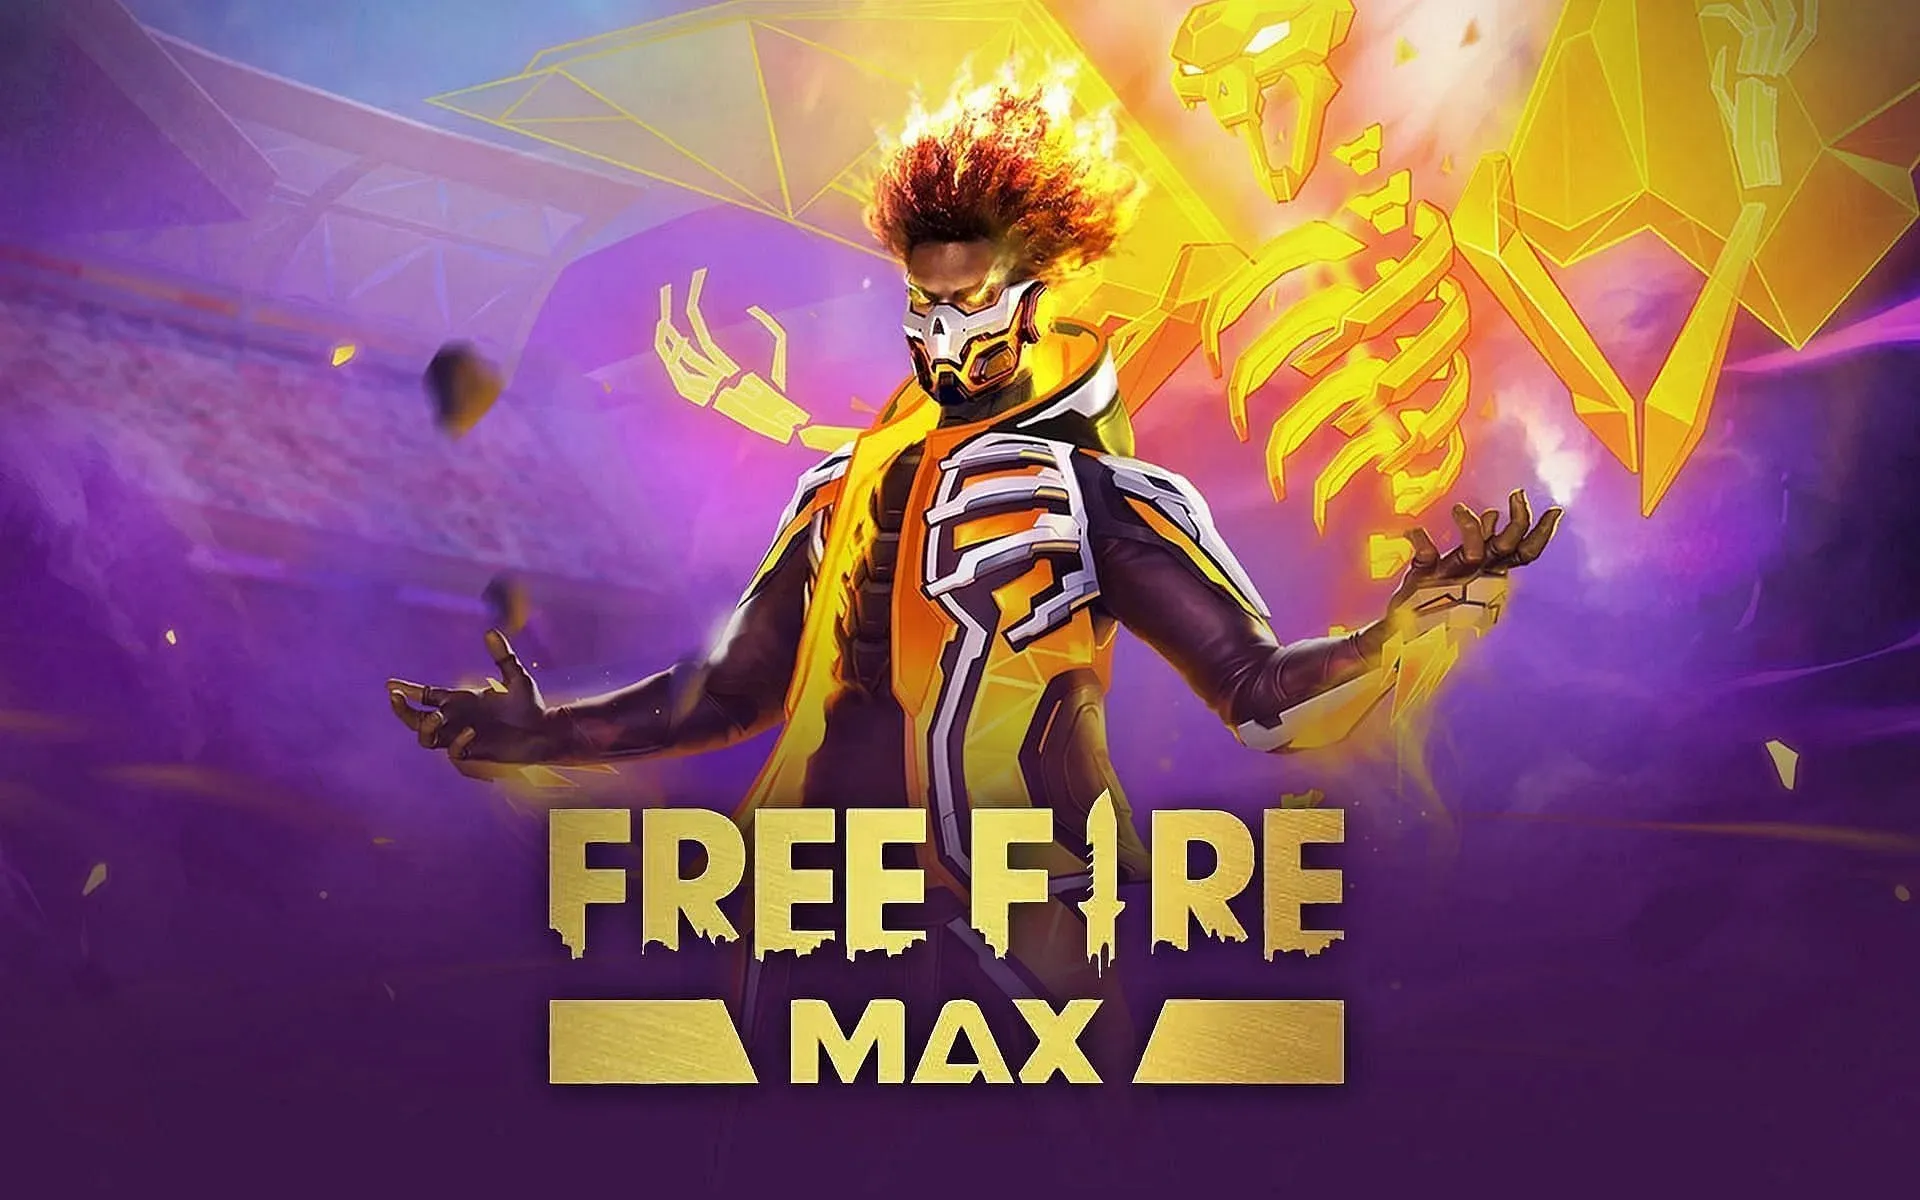 Tổng hợp những chi tiết được nâng cấp trong Free Fire Max 3.0